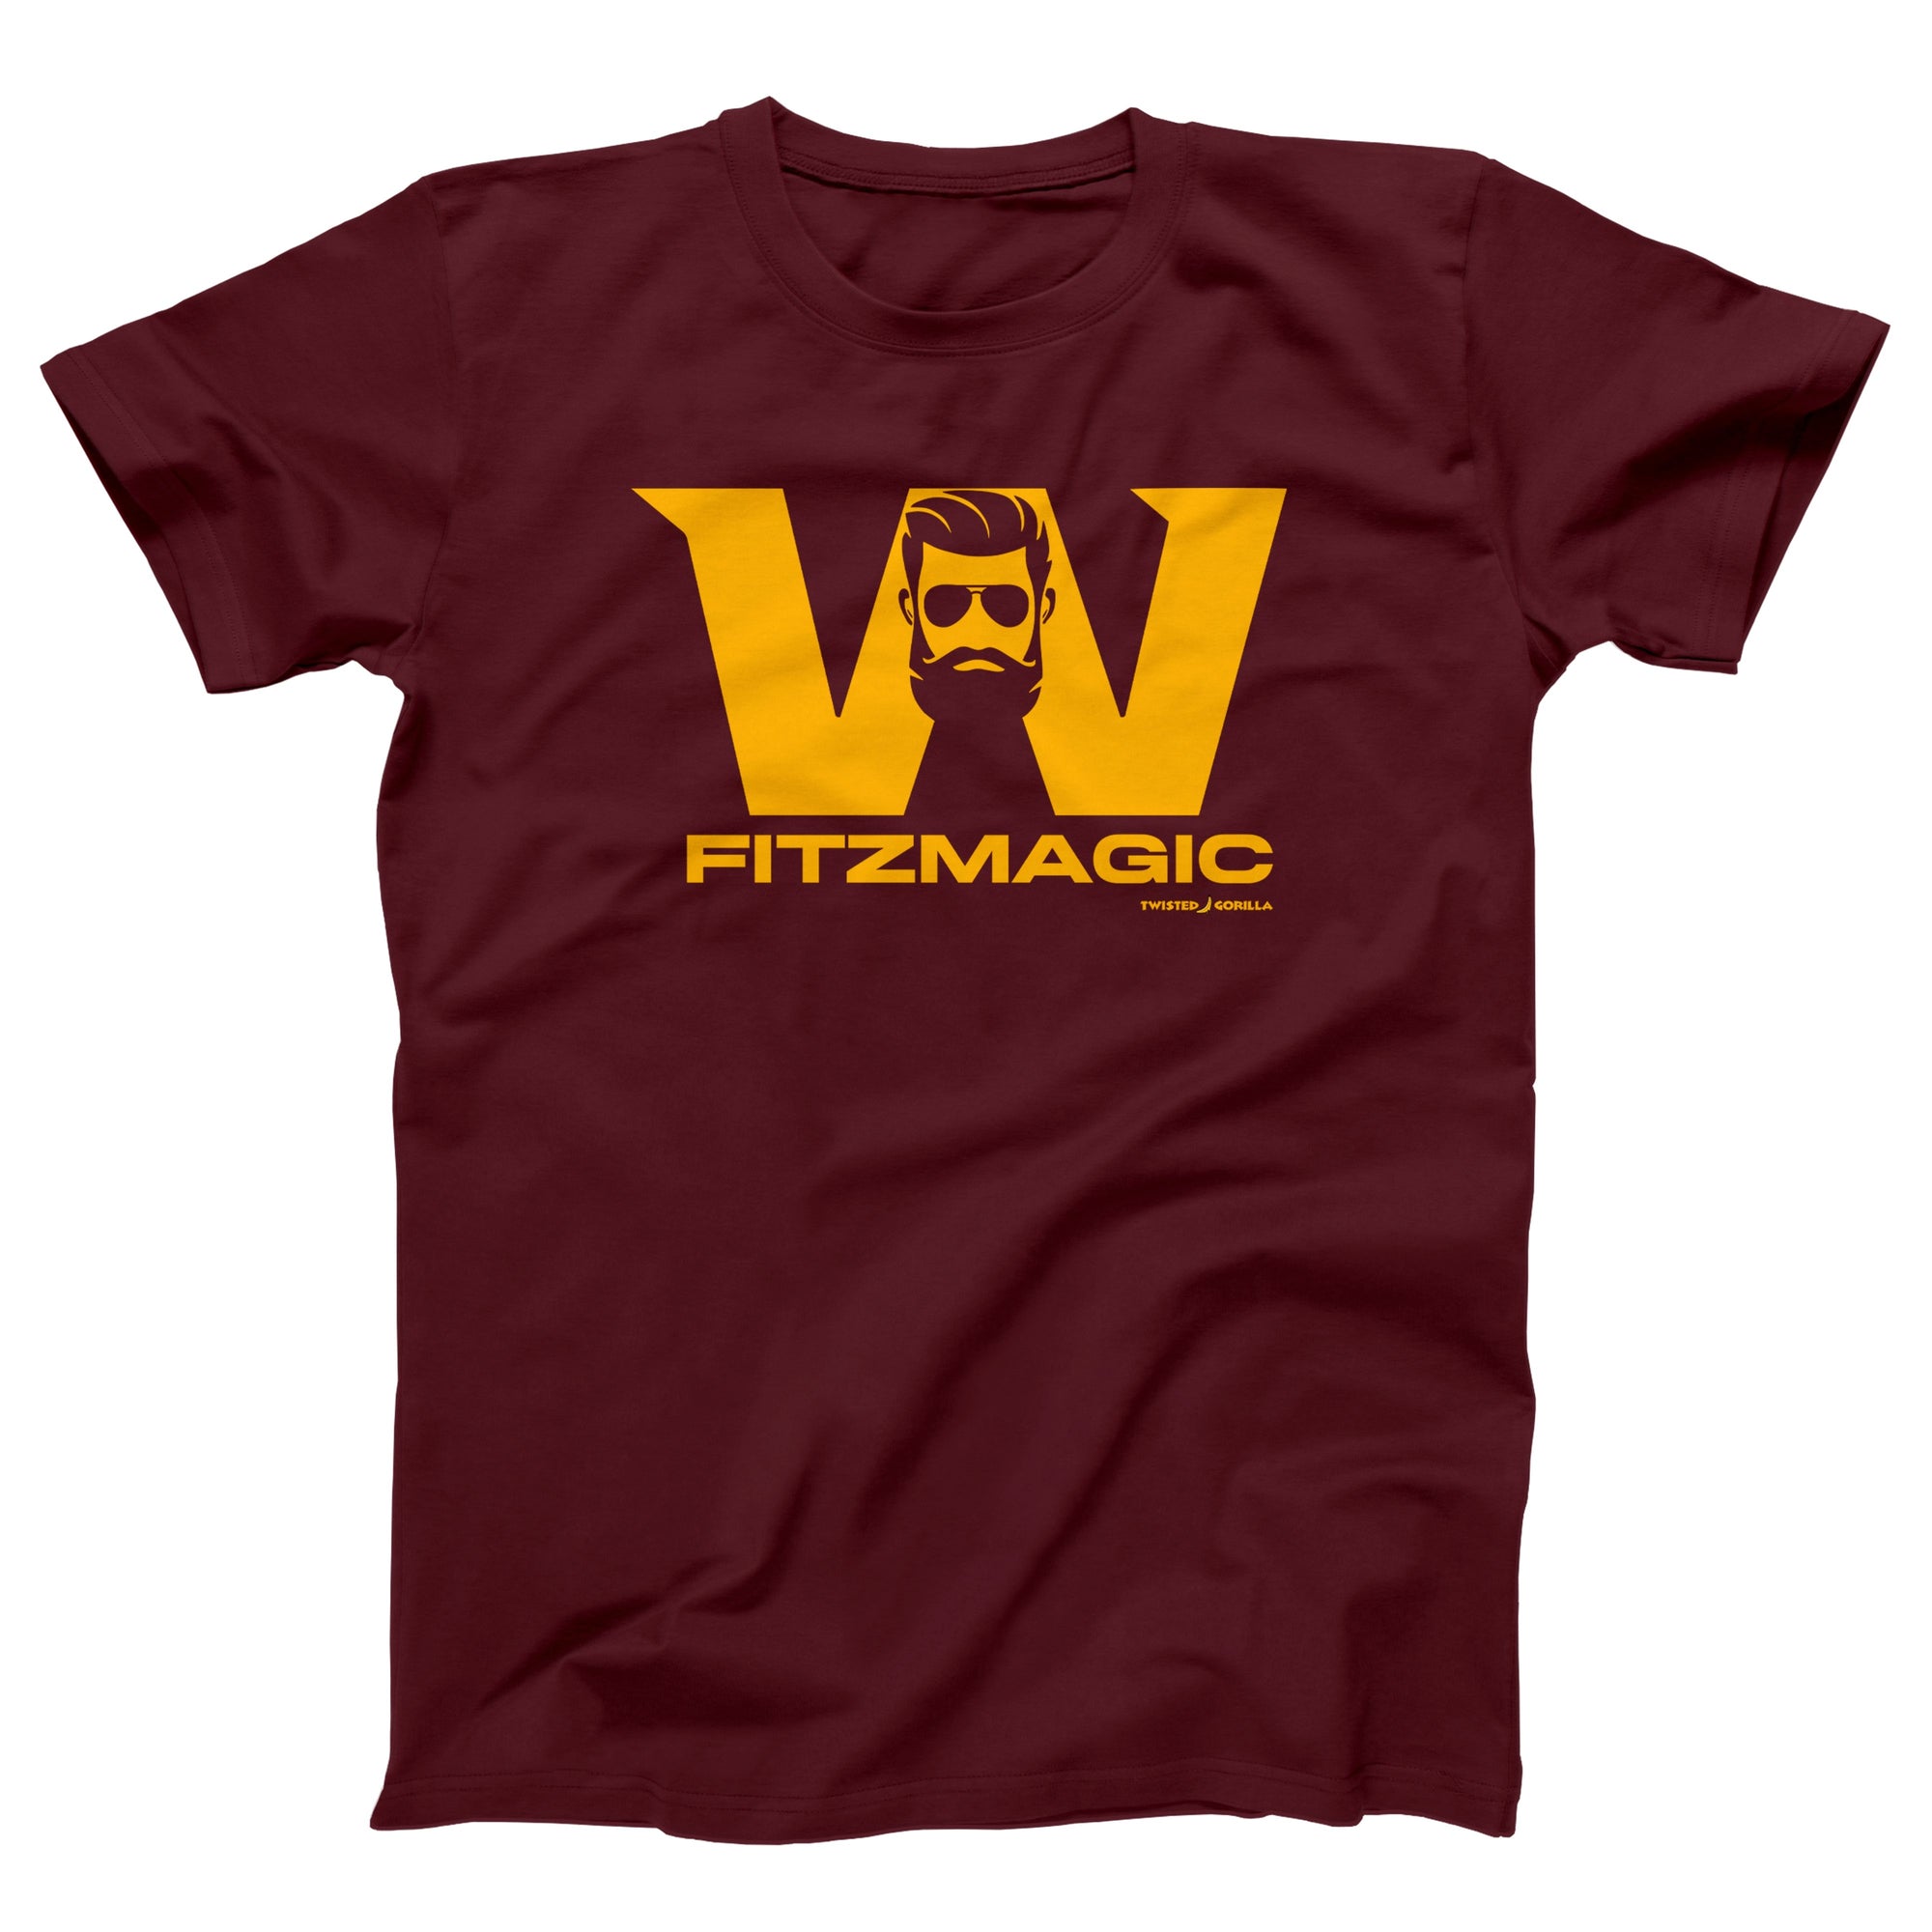 Washington Fitzmagic Adult Unisex T-Shirt - Twisted Gorilla